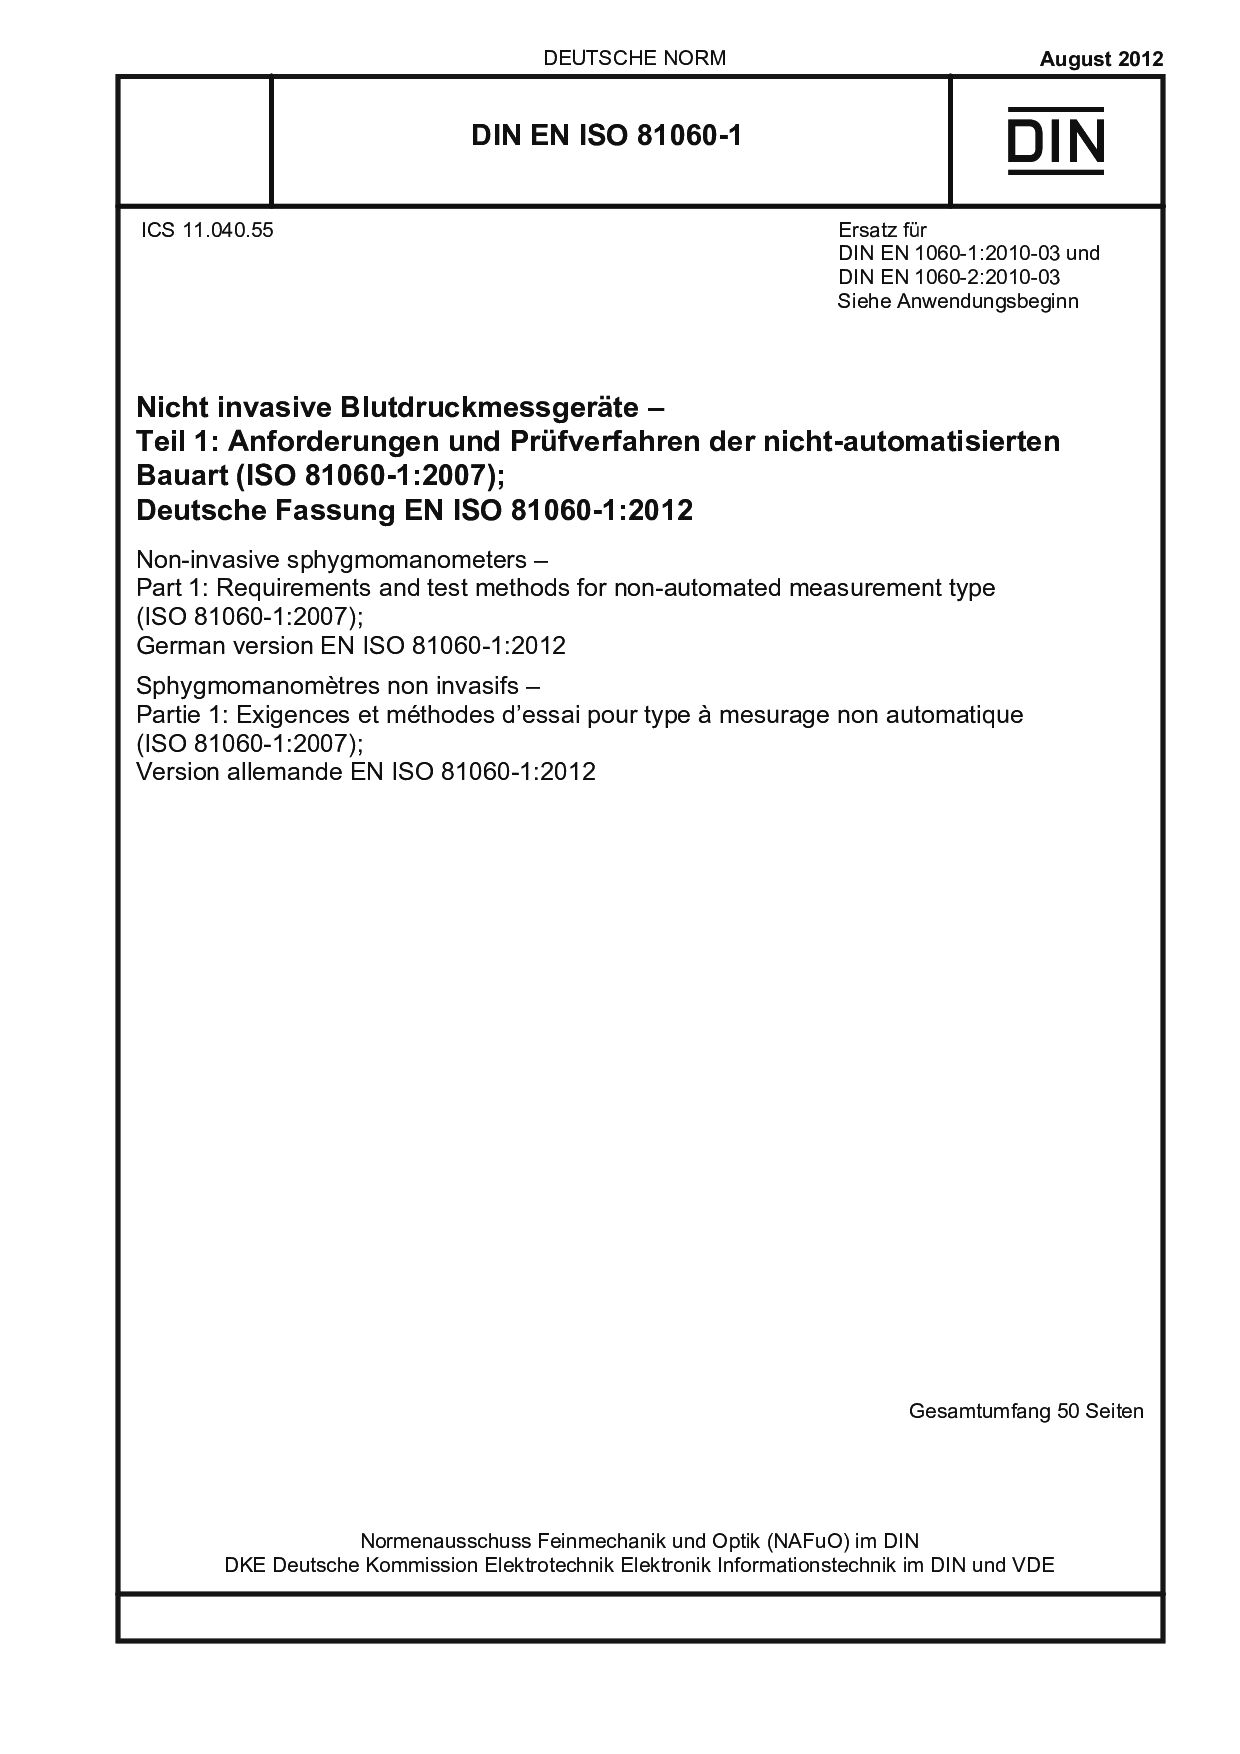 DIN EN ISO 81060-1:2012